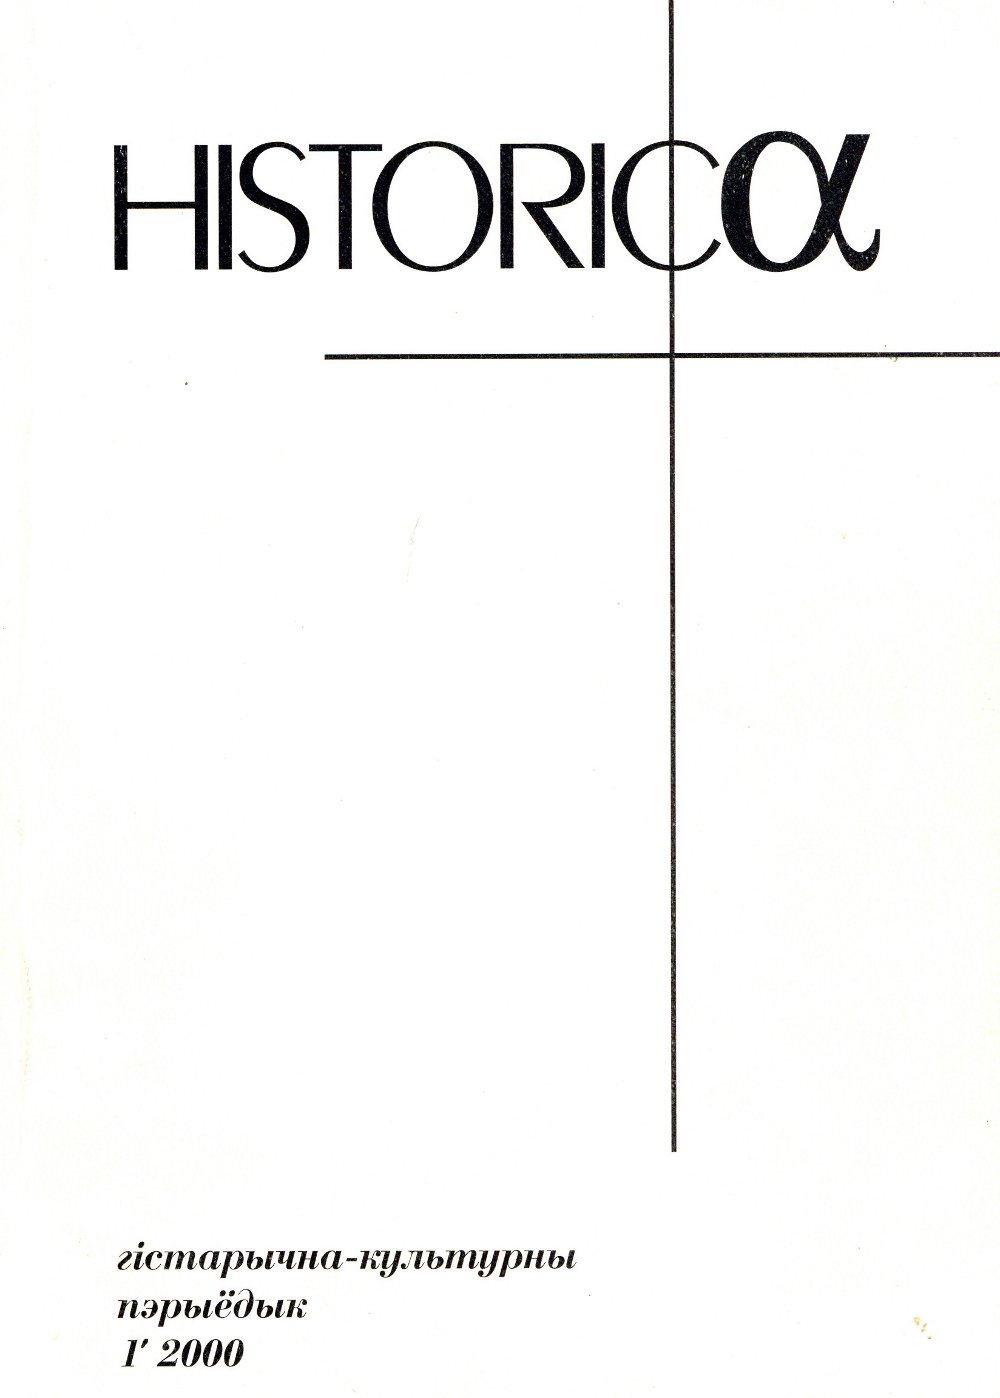 Historica 1/2000